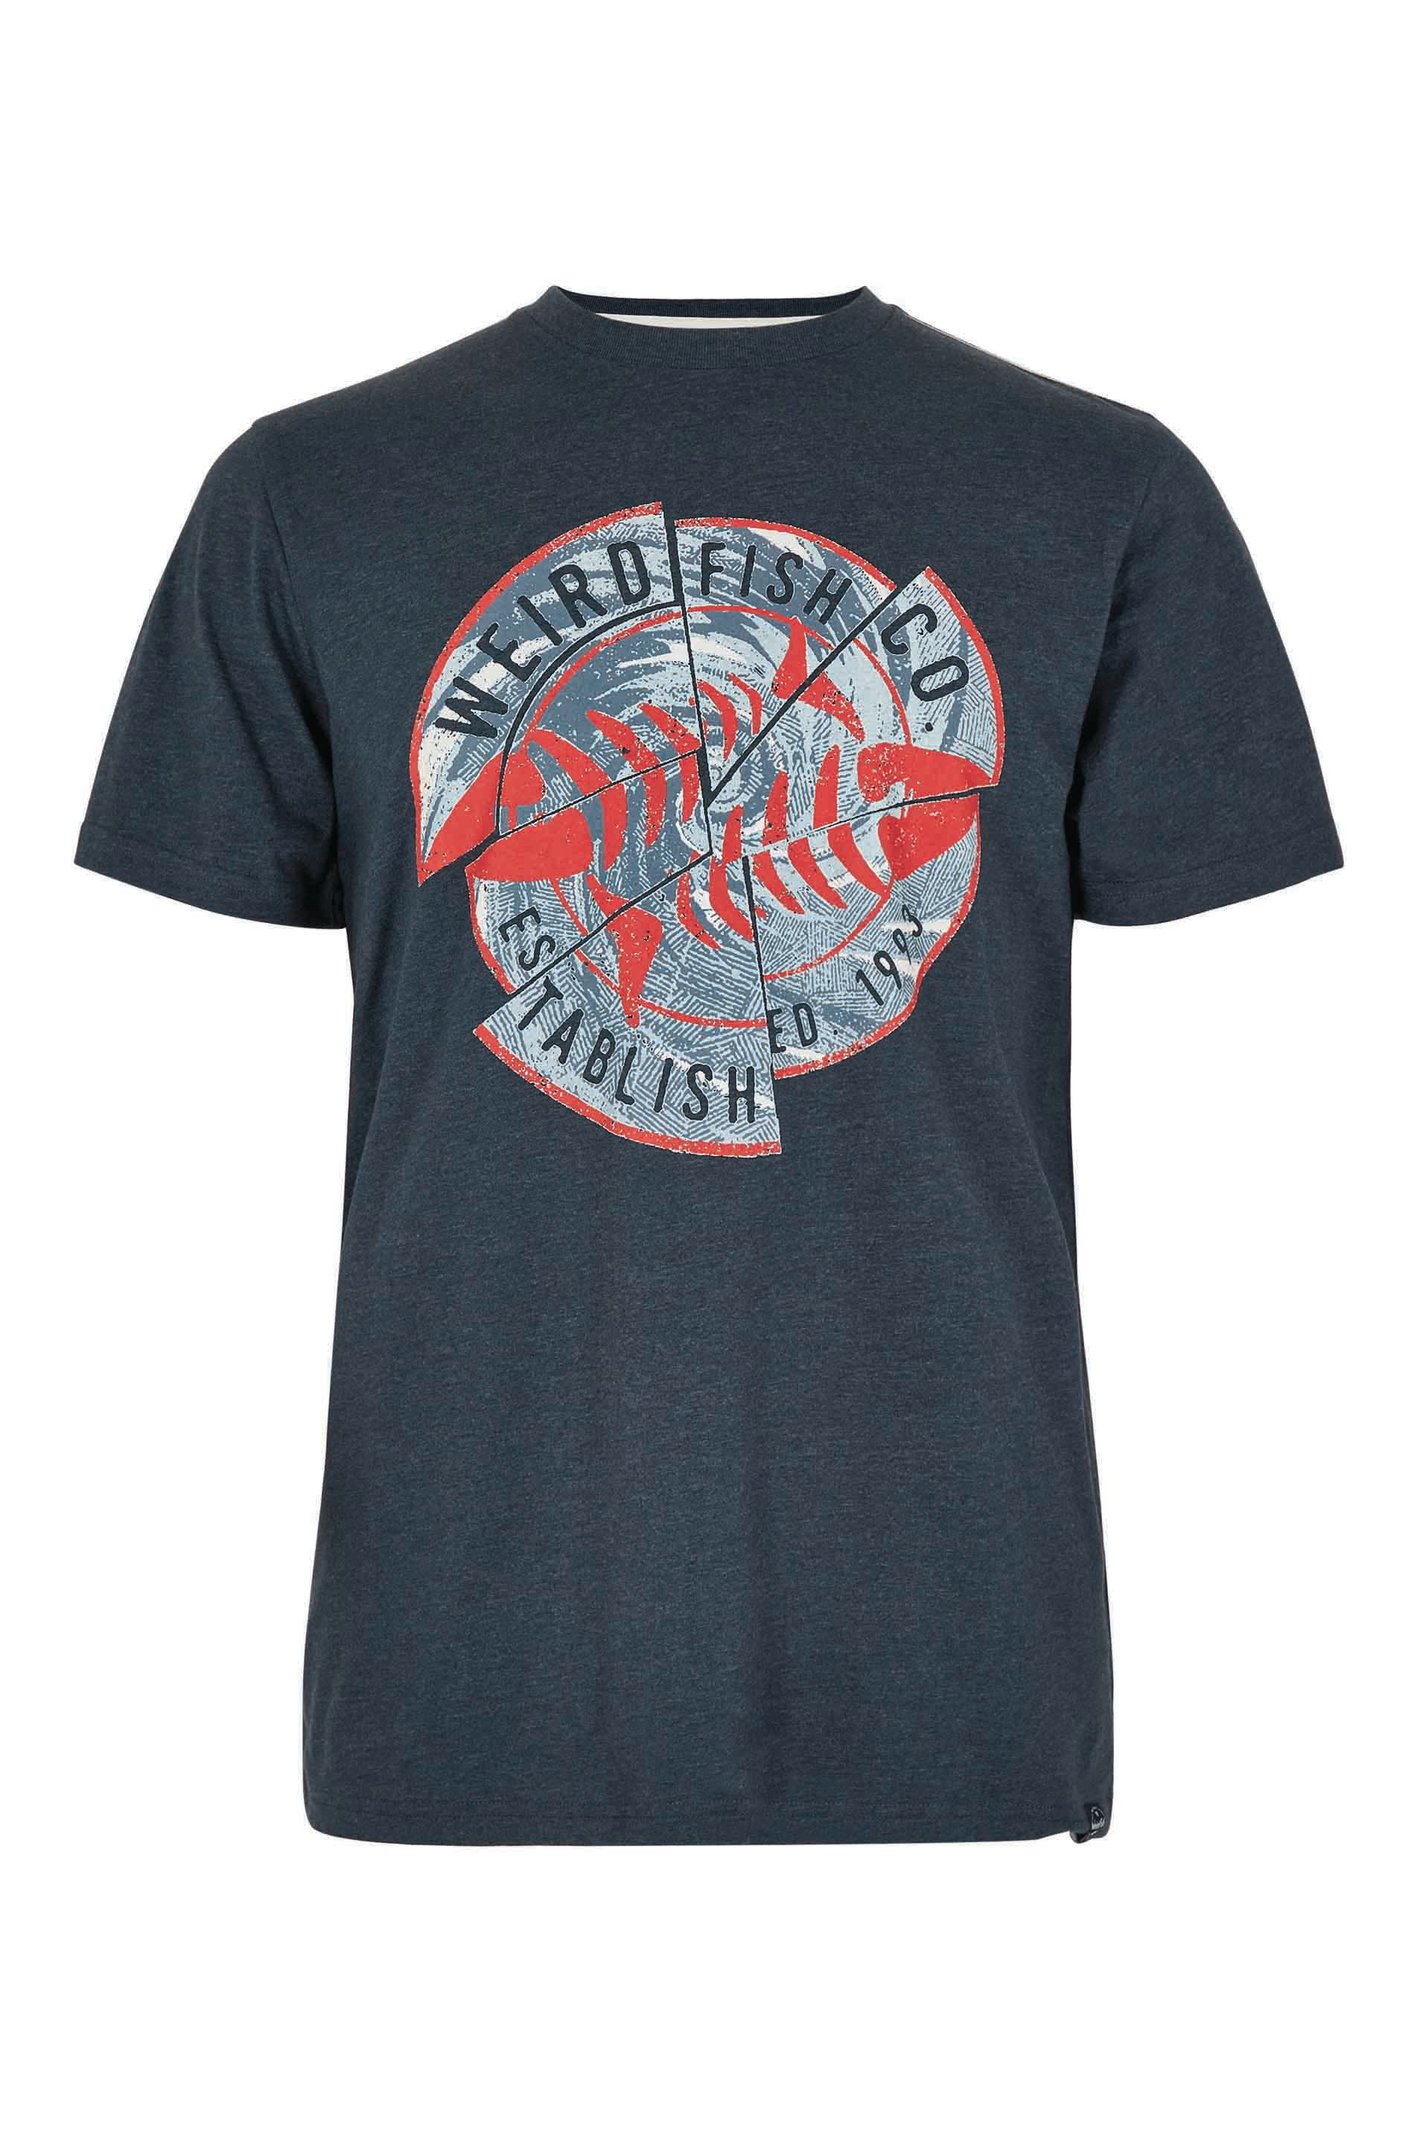 Weird Fish Vortex Eco Graphic T-Shirt Navy Size 3XL